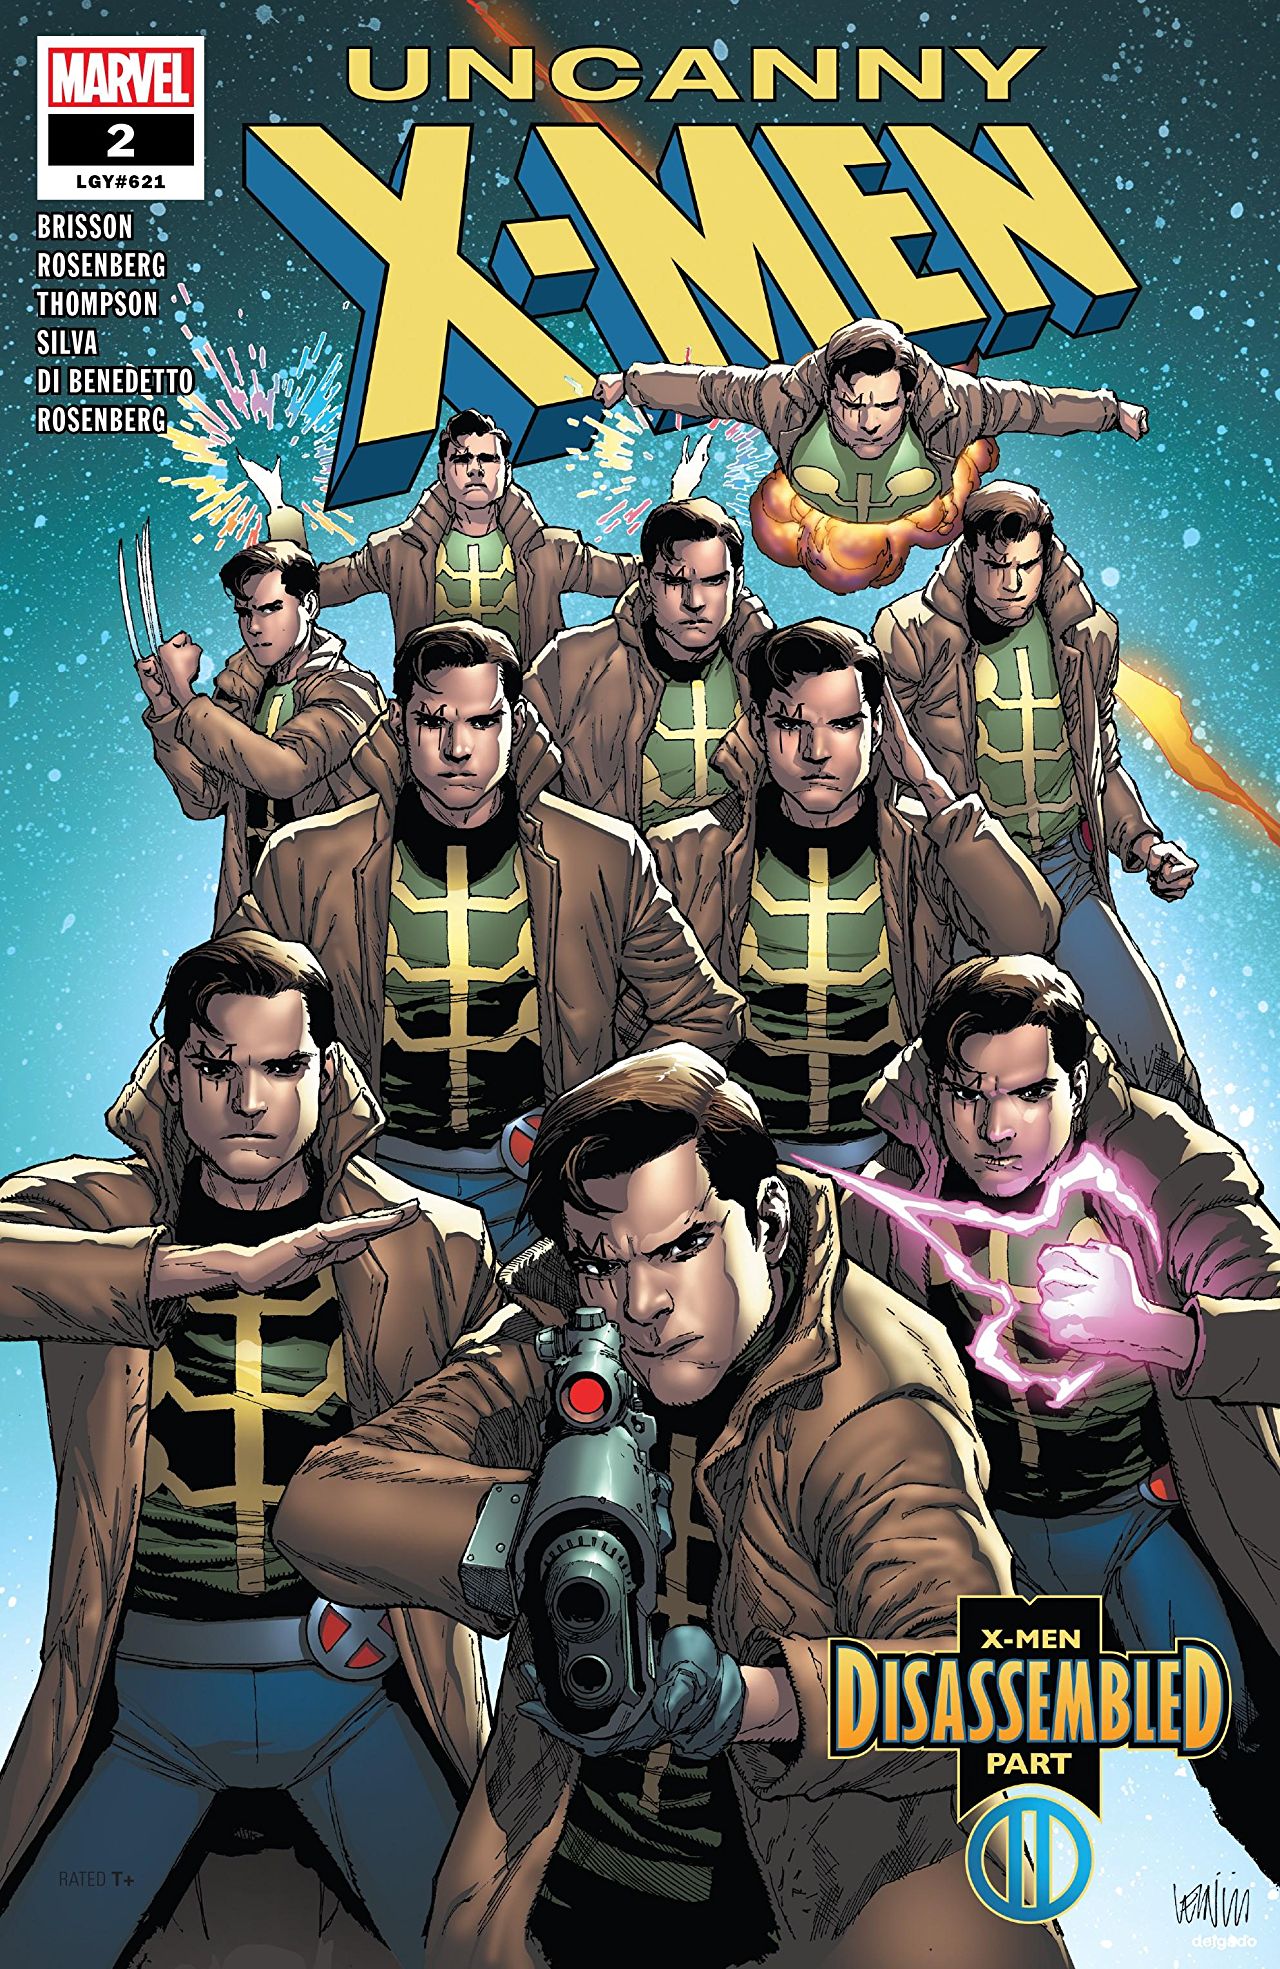 Uncanny X-Men #2 review